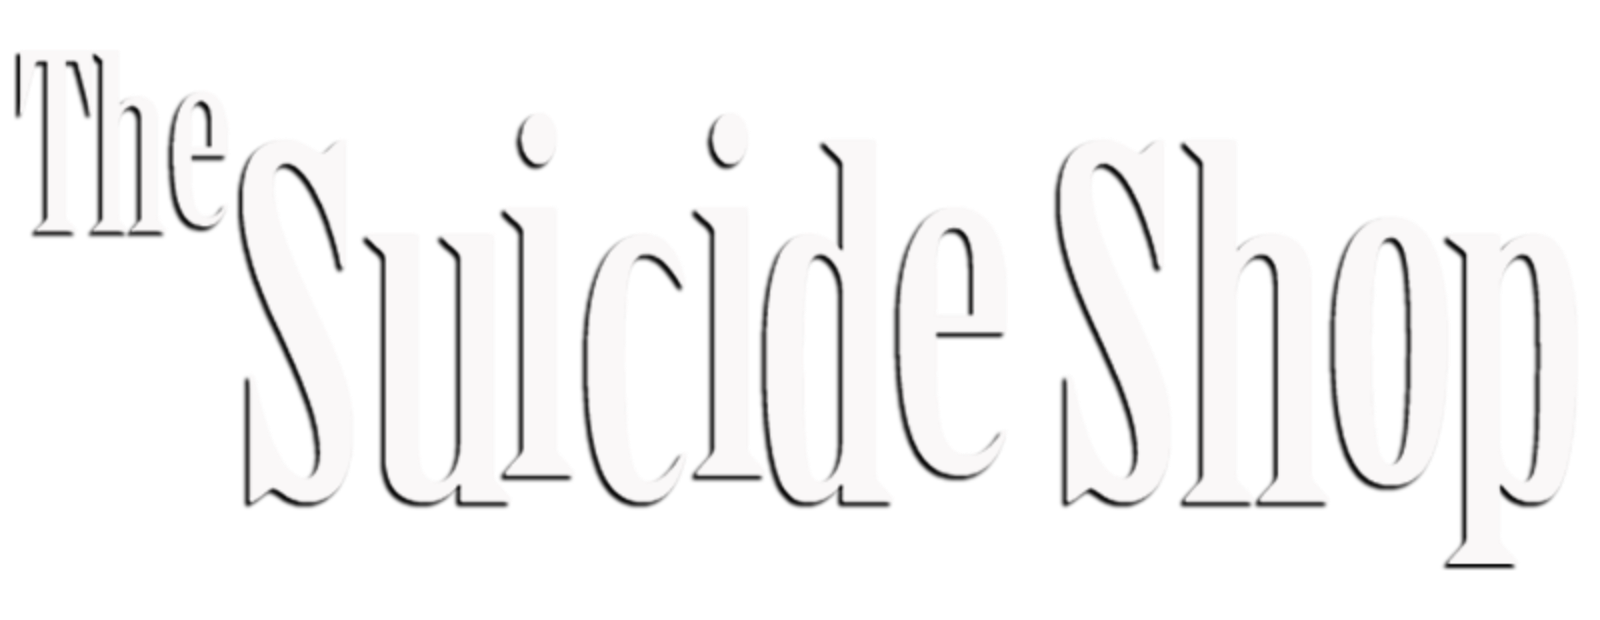 The Suicide Shop 